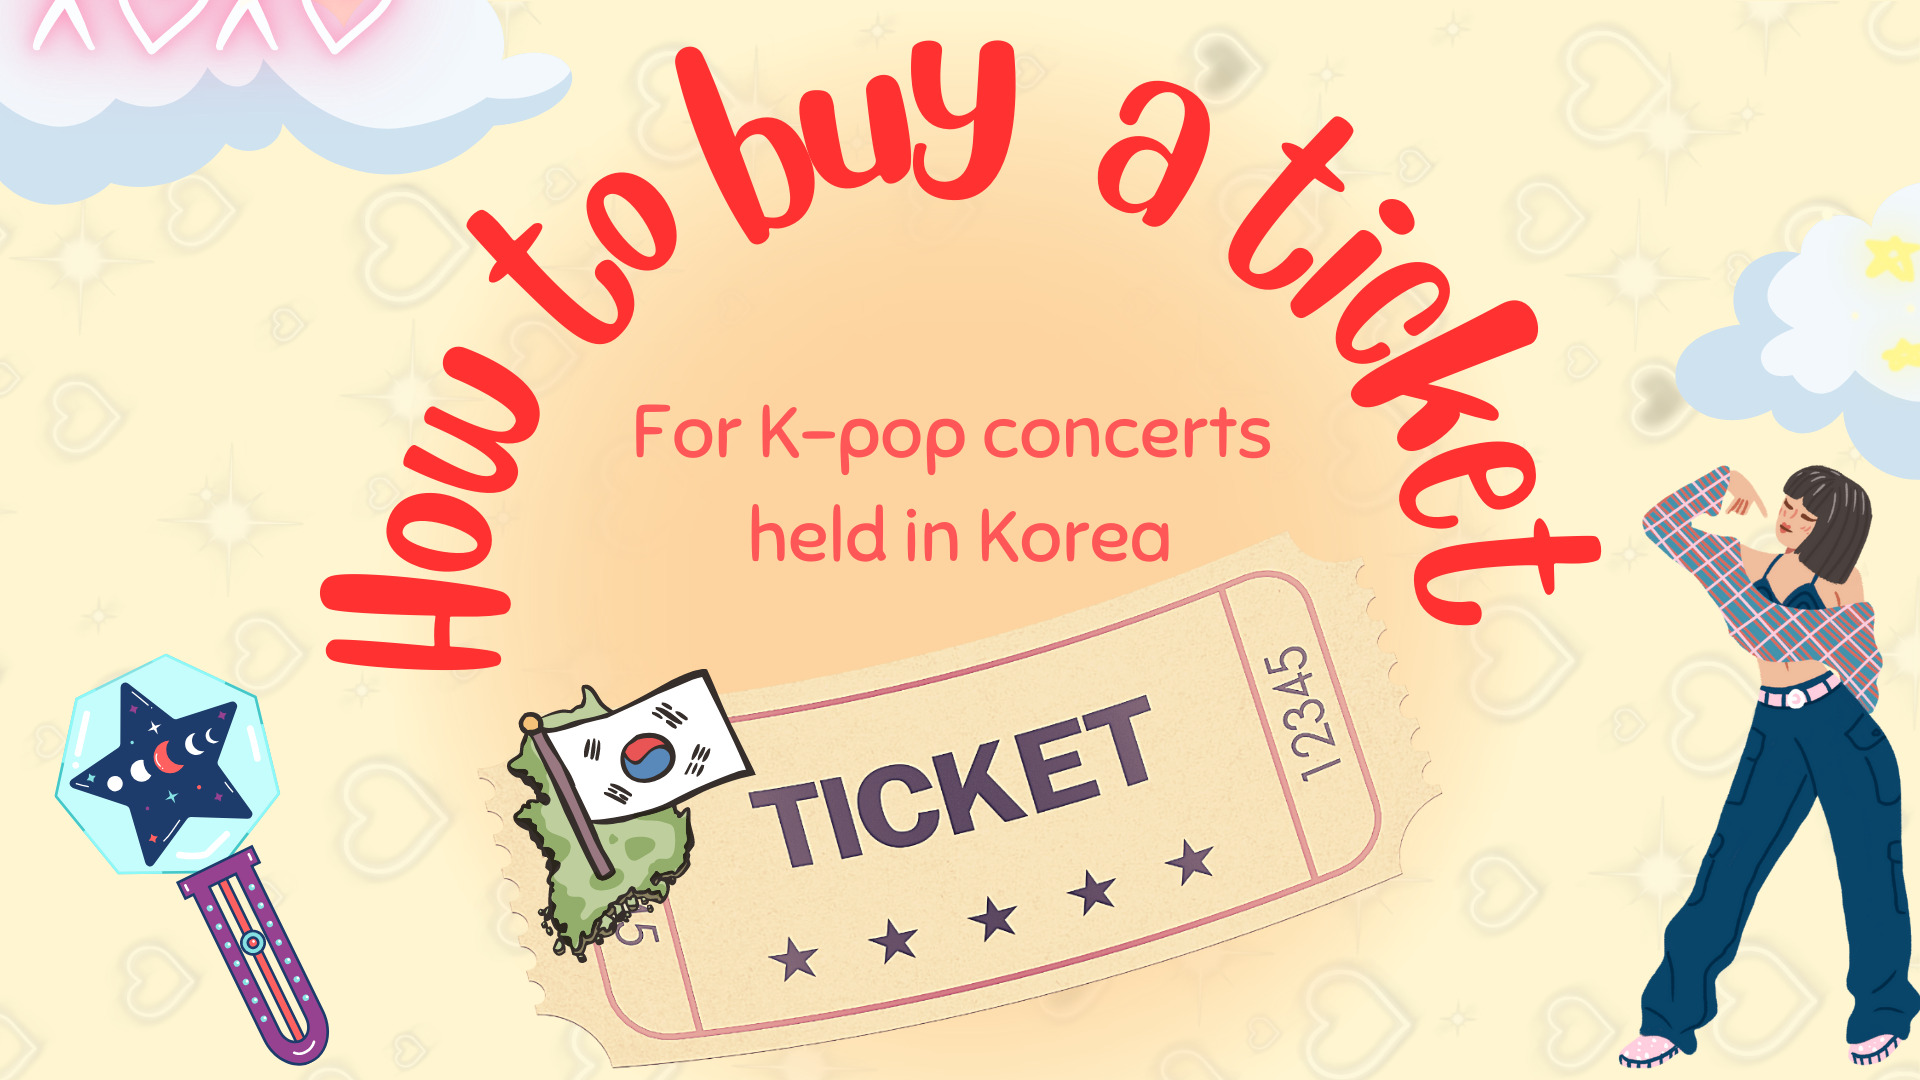 Как купить билет на концерты K-pop в Корее？ - Etourism